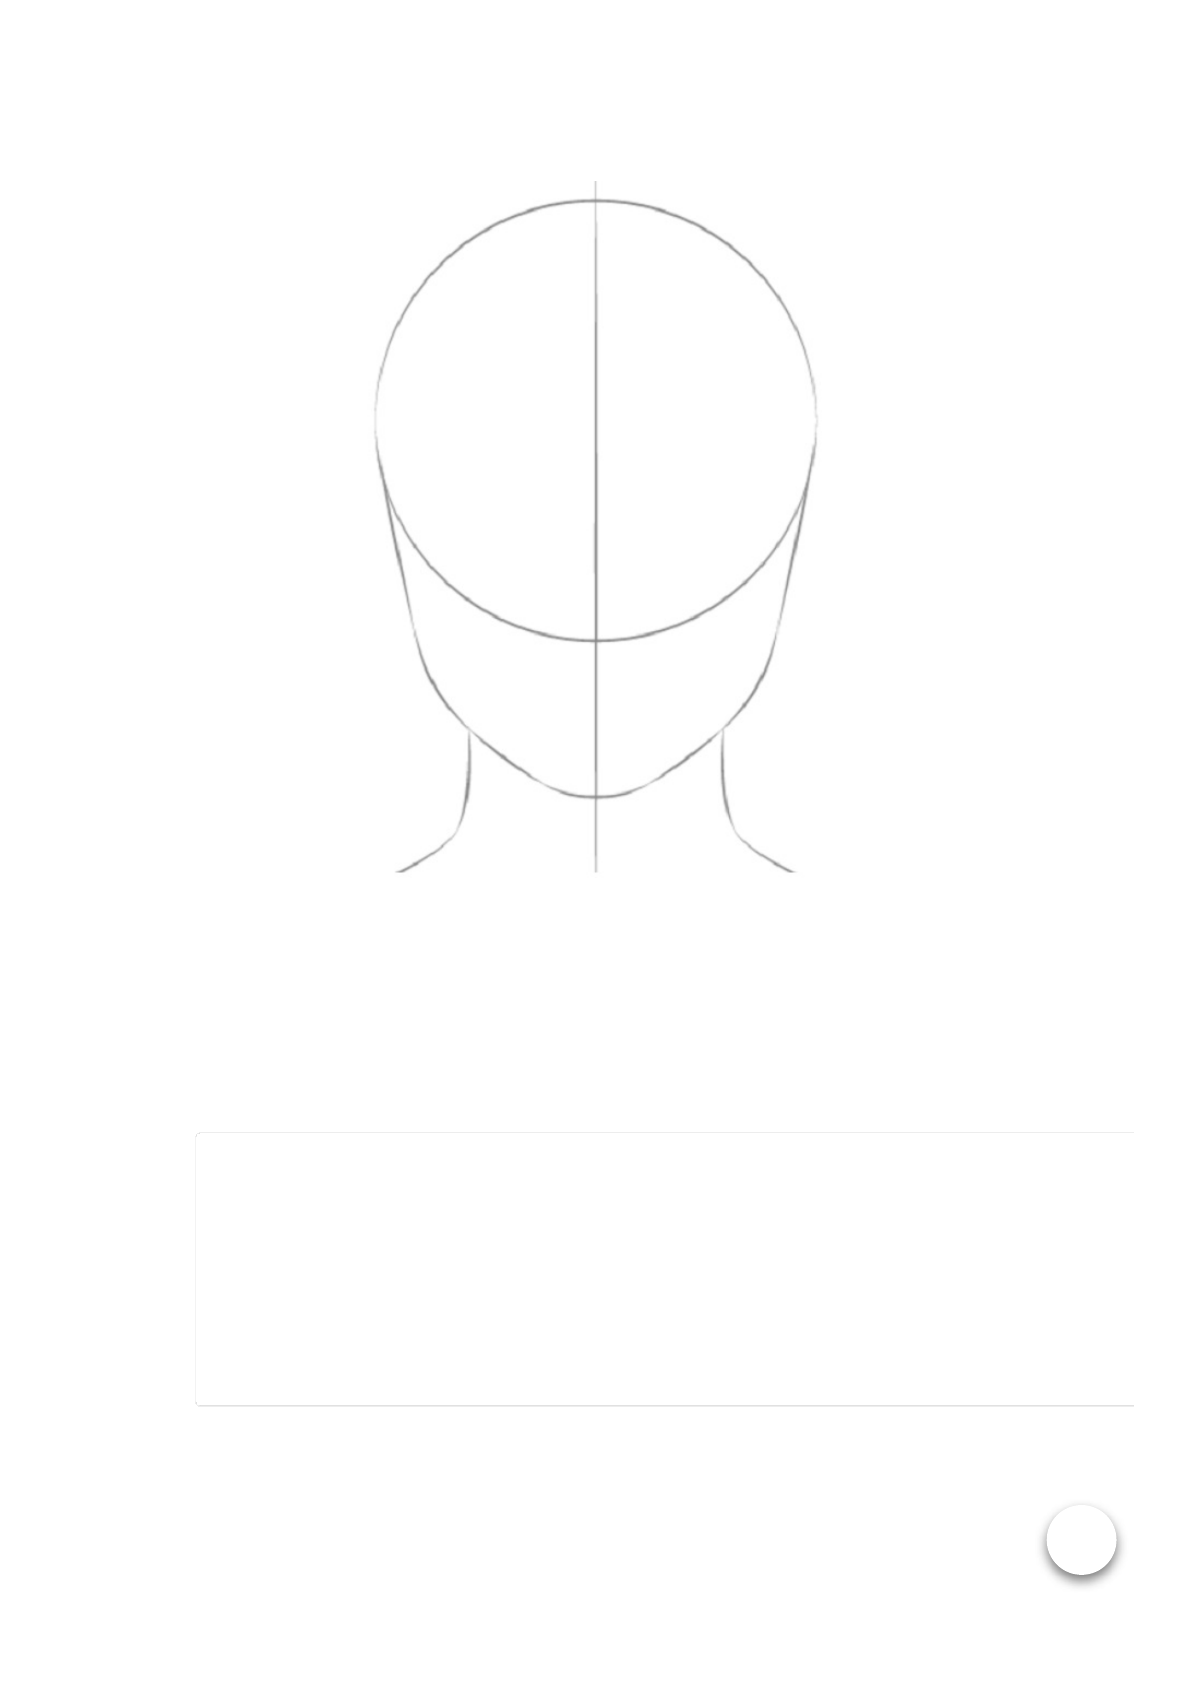 Como Desenhar um Rosto [2020] Passo a Passo Simples - Desenho Artístico e  Figura Humana